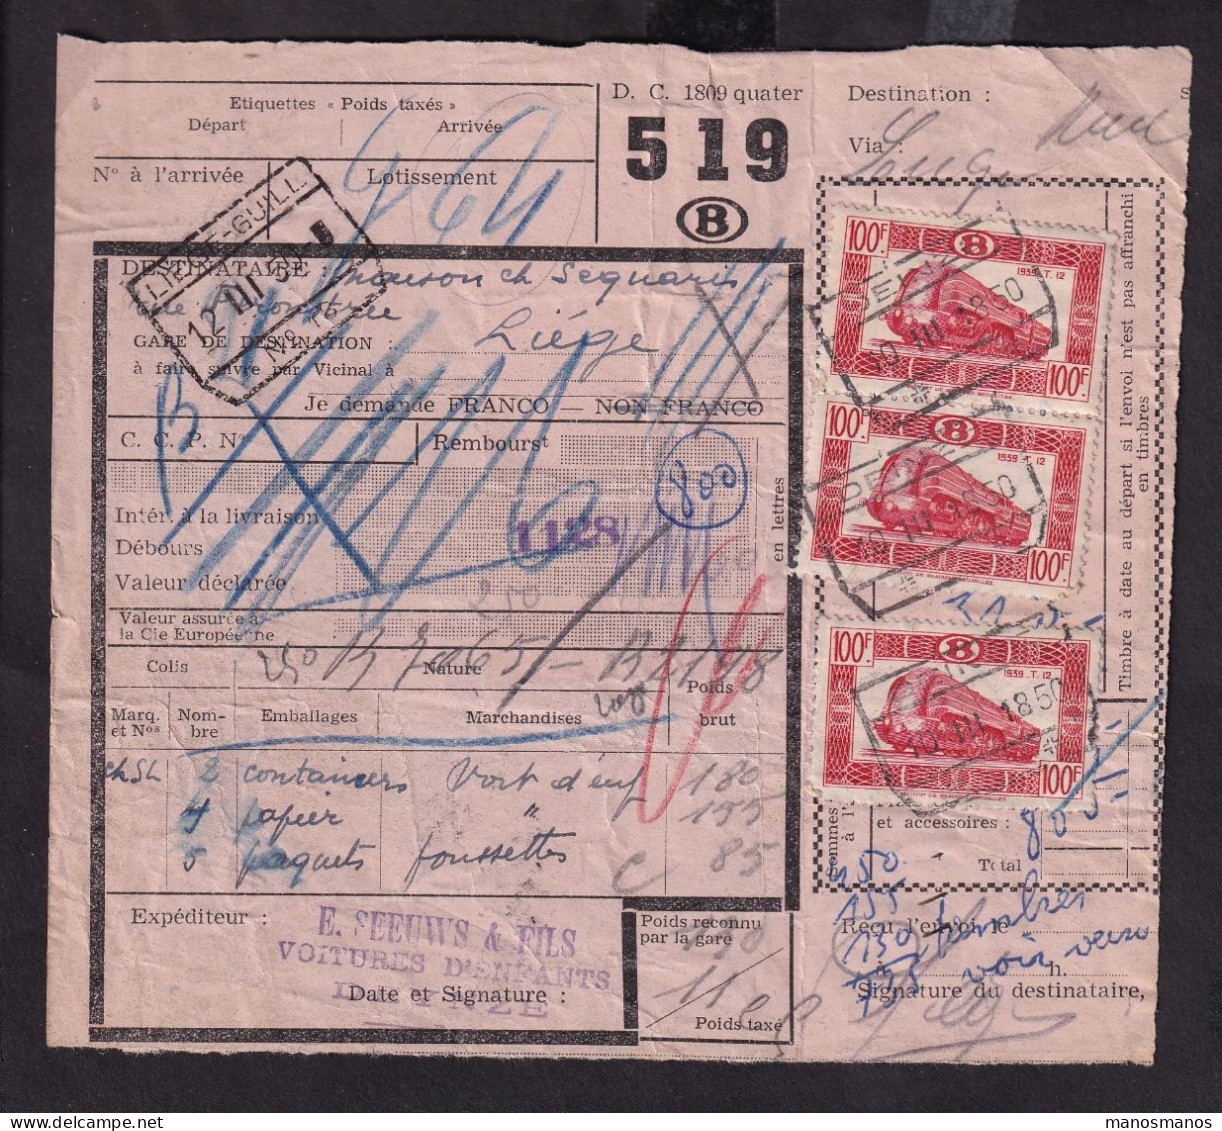 DDFF 165 - Timbres Chemin De Fer En MULTIPLES - 8 X 100 F - S/ Bulletin D'Expédition - DEINZE 1950 - Documenti & Frammenti